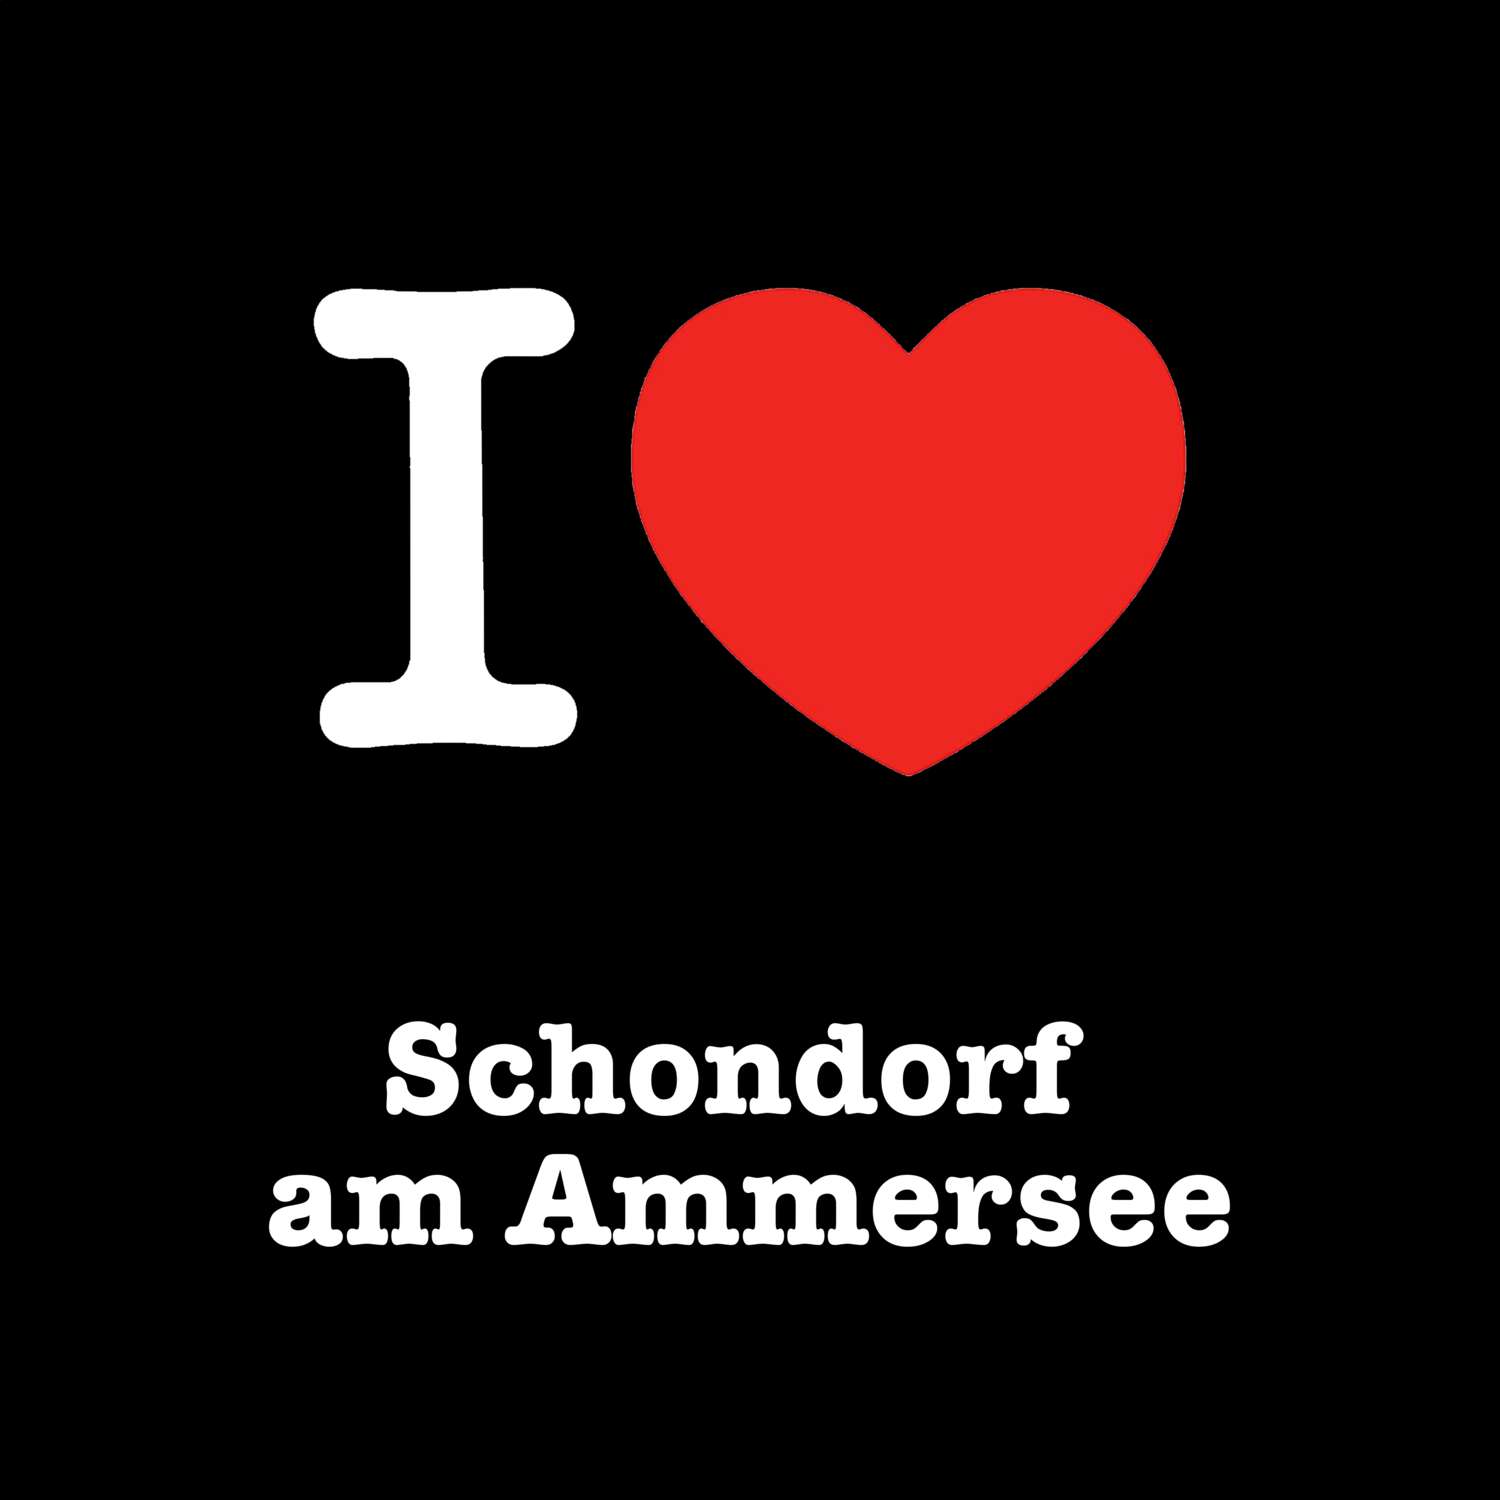 Schondorf am Ammersee T-Shirt »I love«